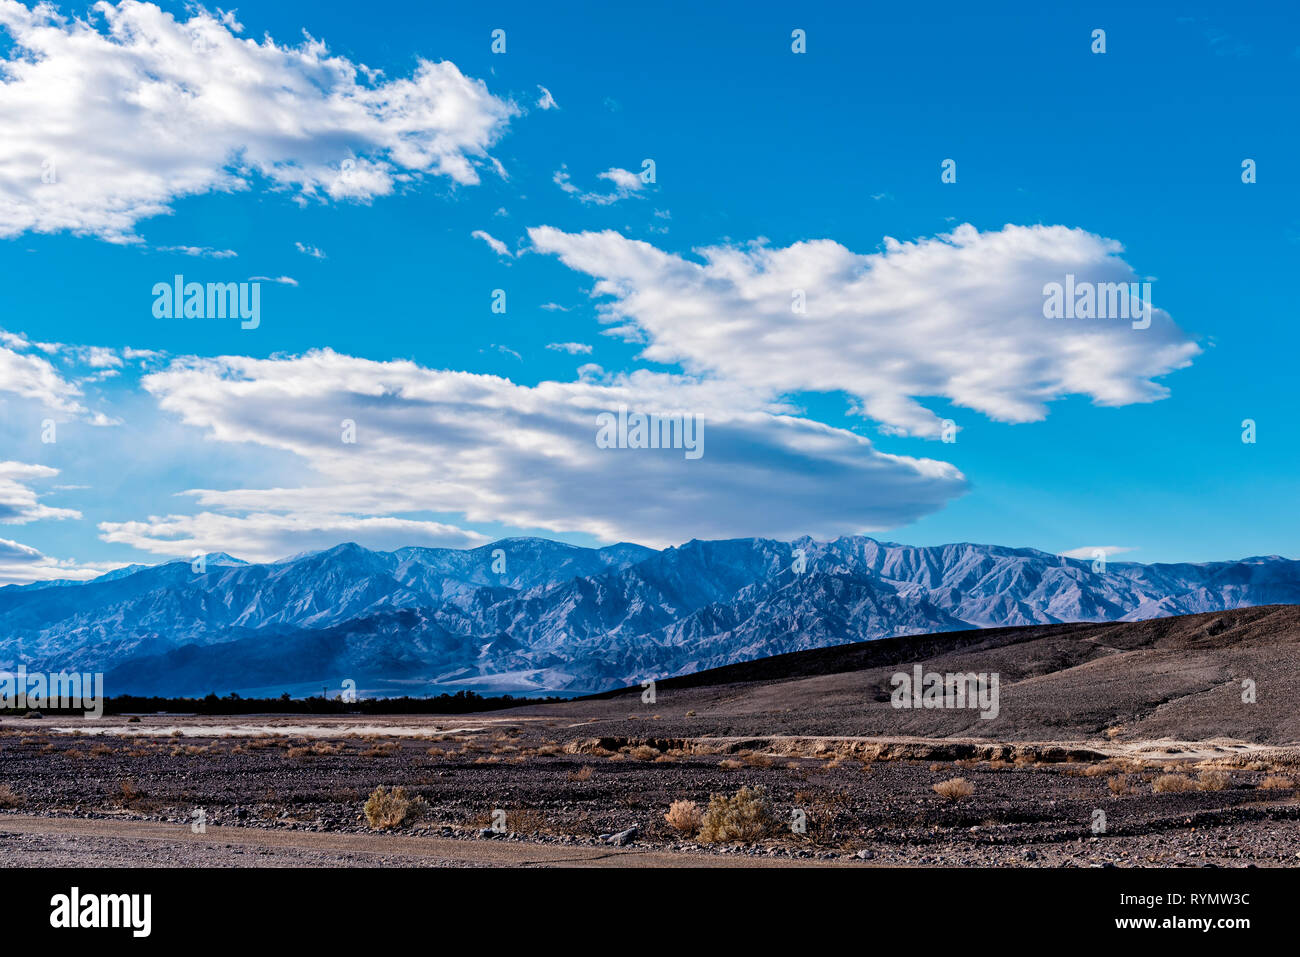 Paysage désertique aride avec peu de végétation et au-delà des montagnes bleues sous un ciel bleu avec des nuages blancs moelleux. Banque D'Images